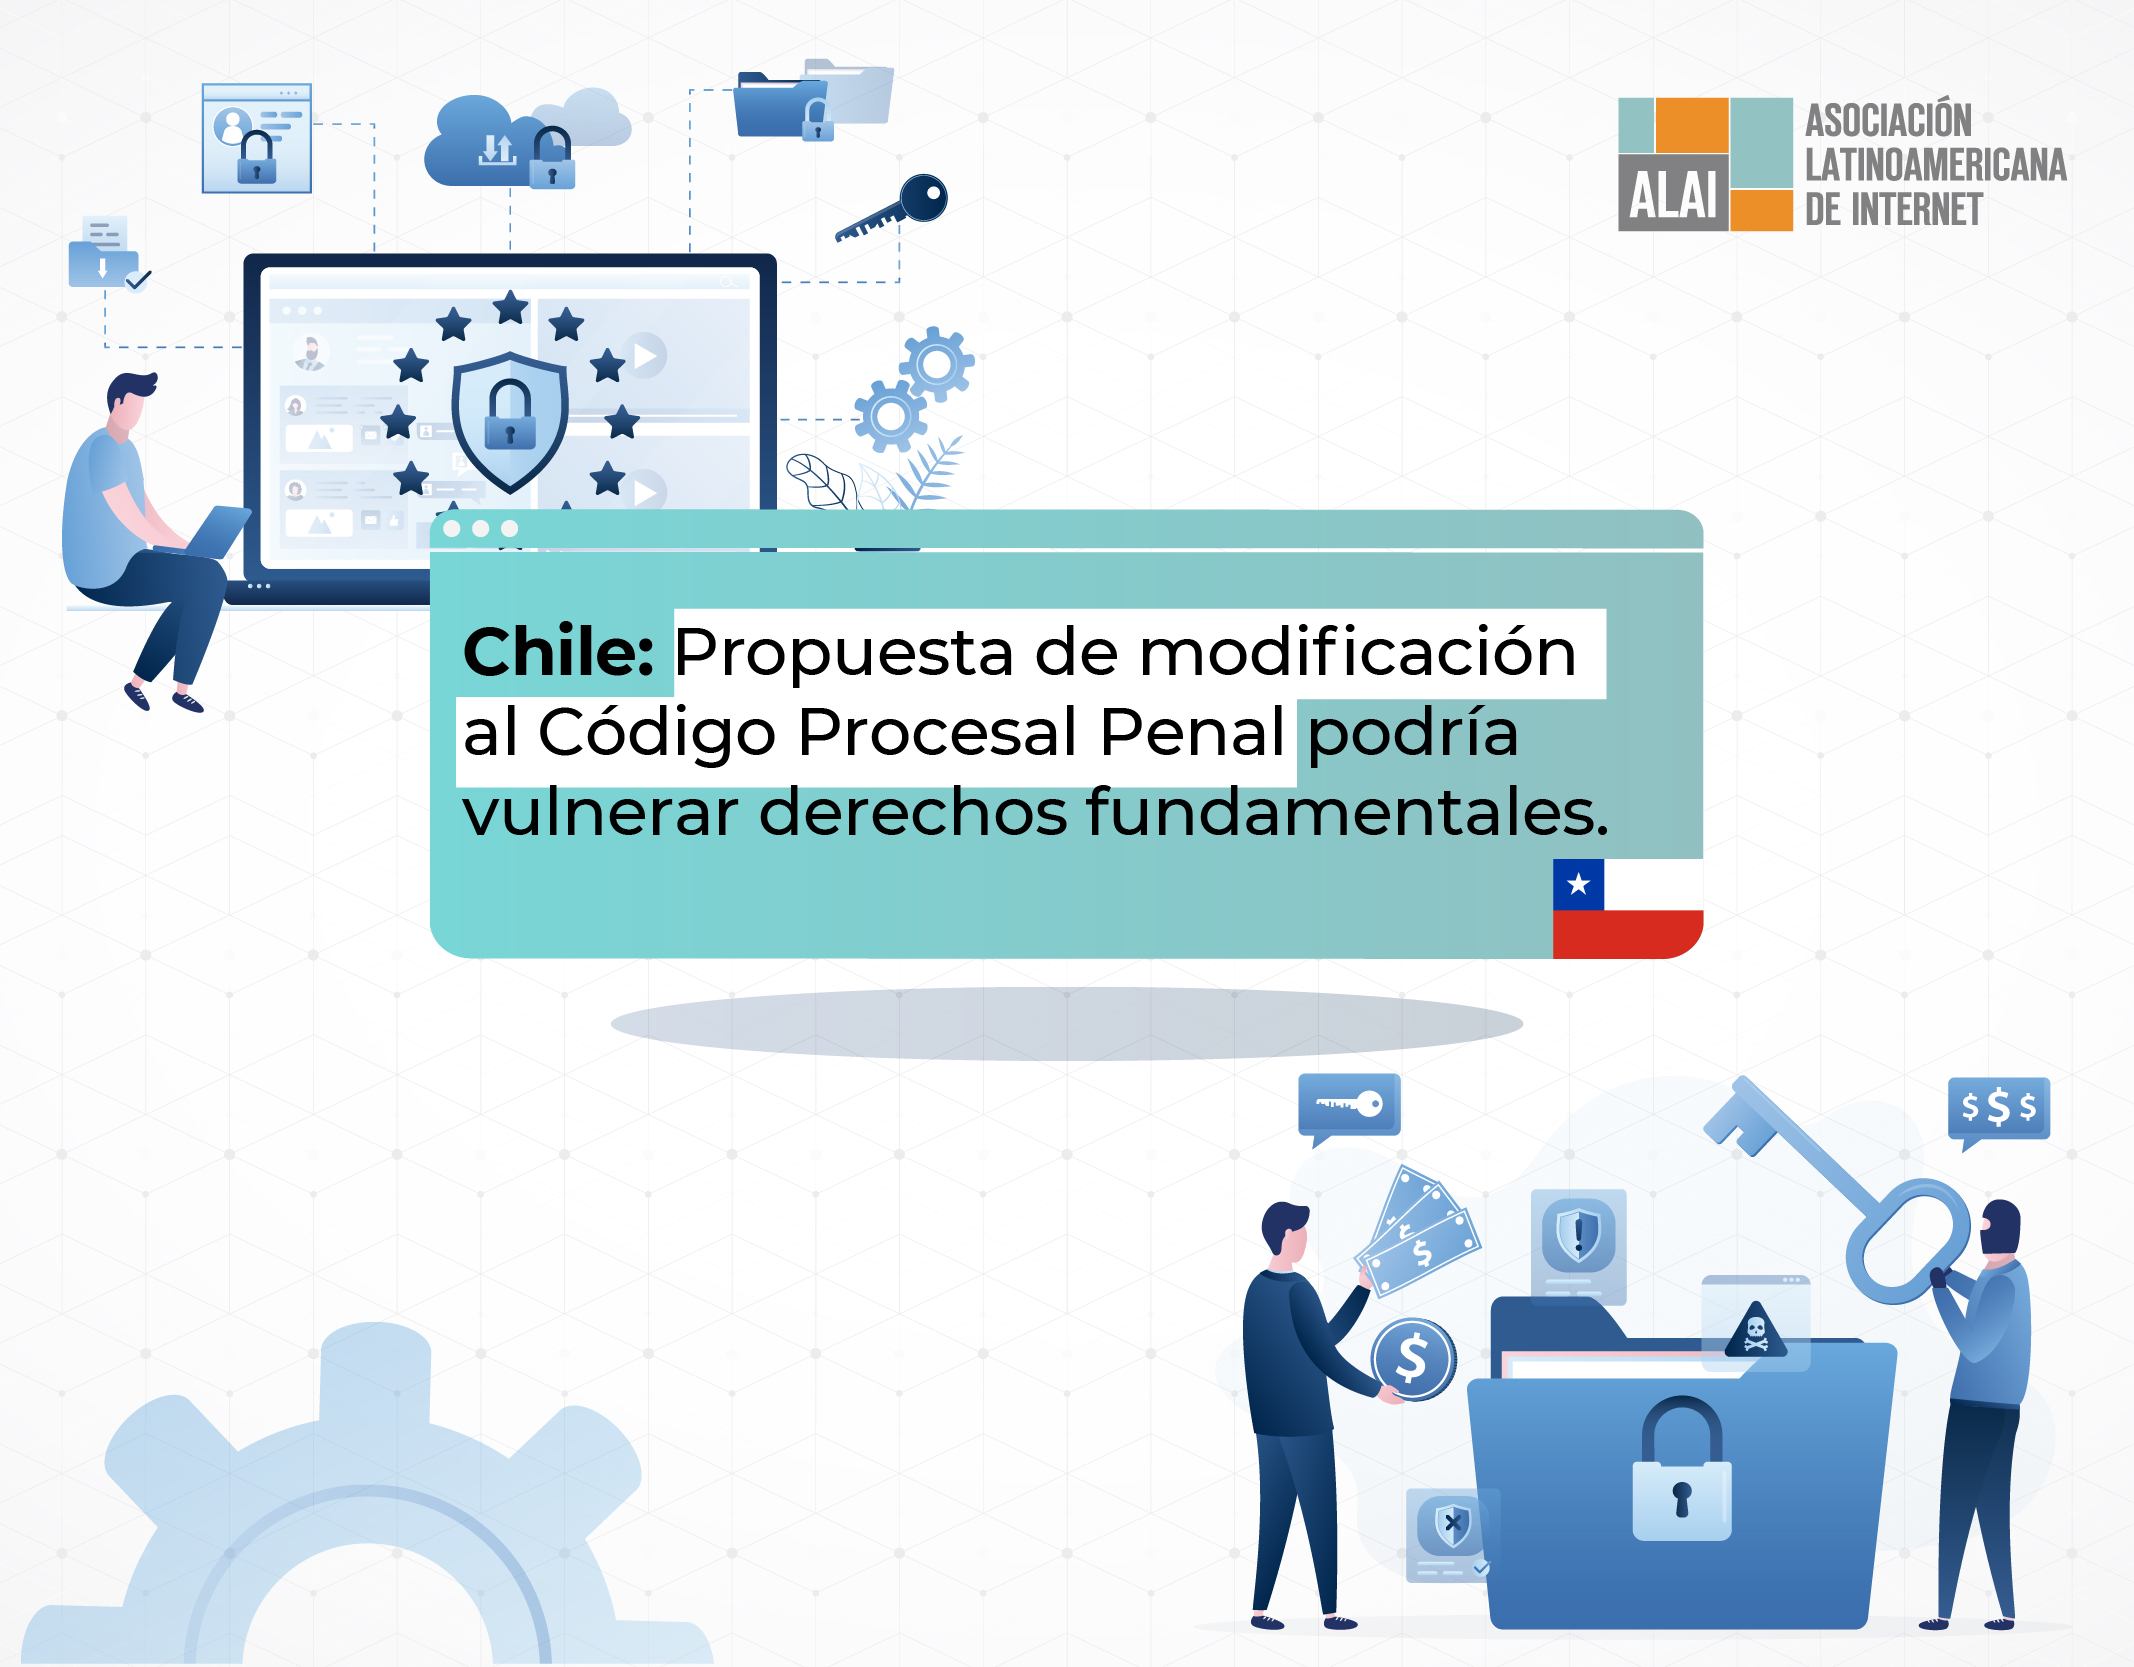 Chile: Propuesta de modificación al Código Procesal Penal podría vulnerar derechos fundamentales